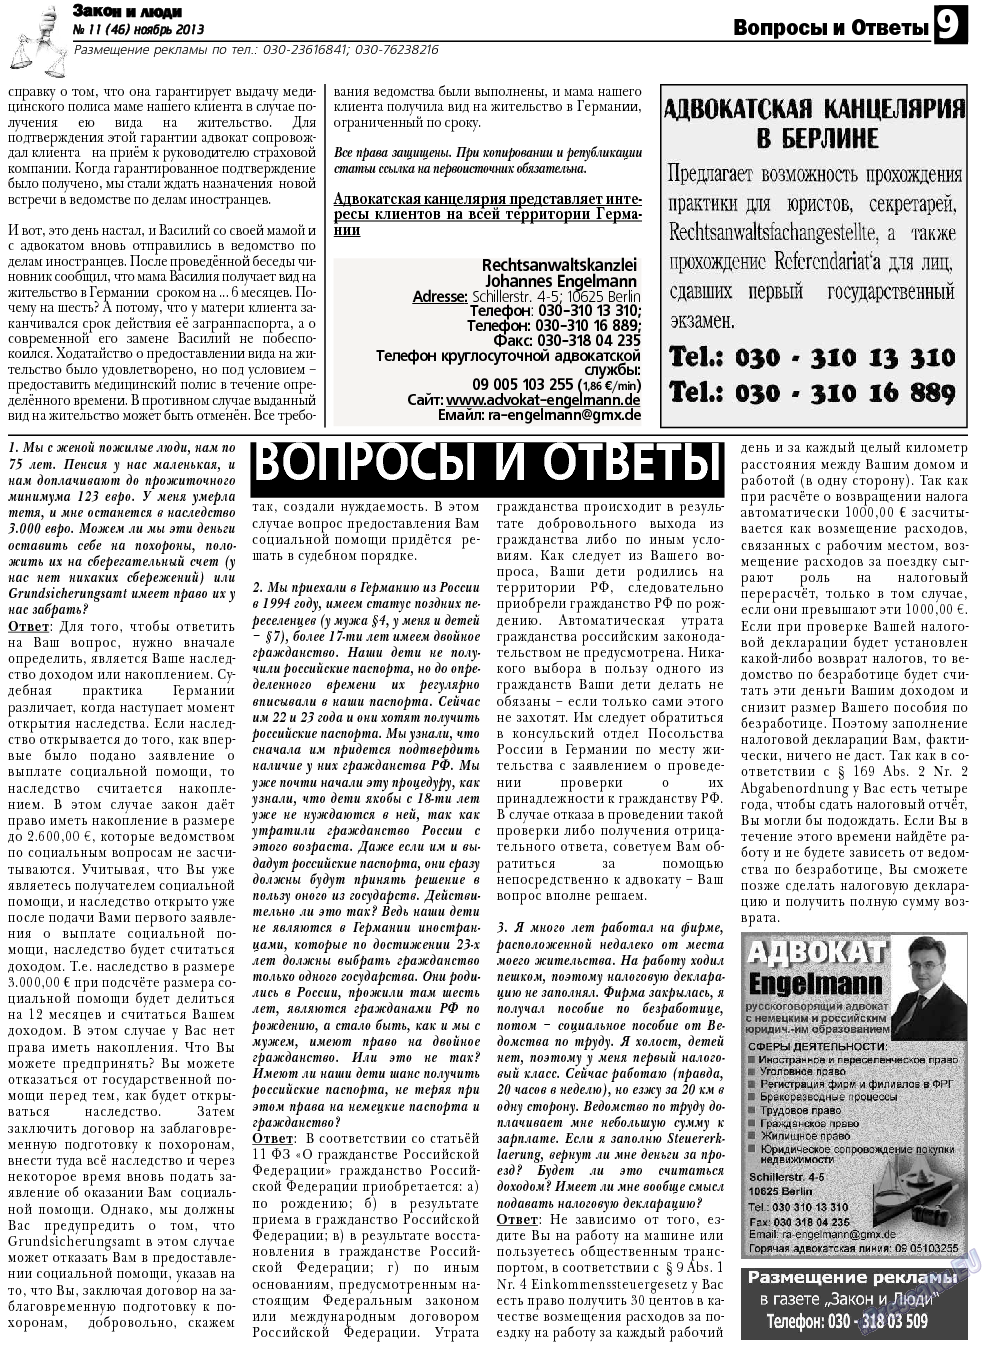 Закон и люди, газета. 2013 №11 стр.9